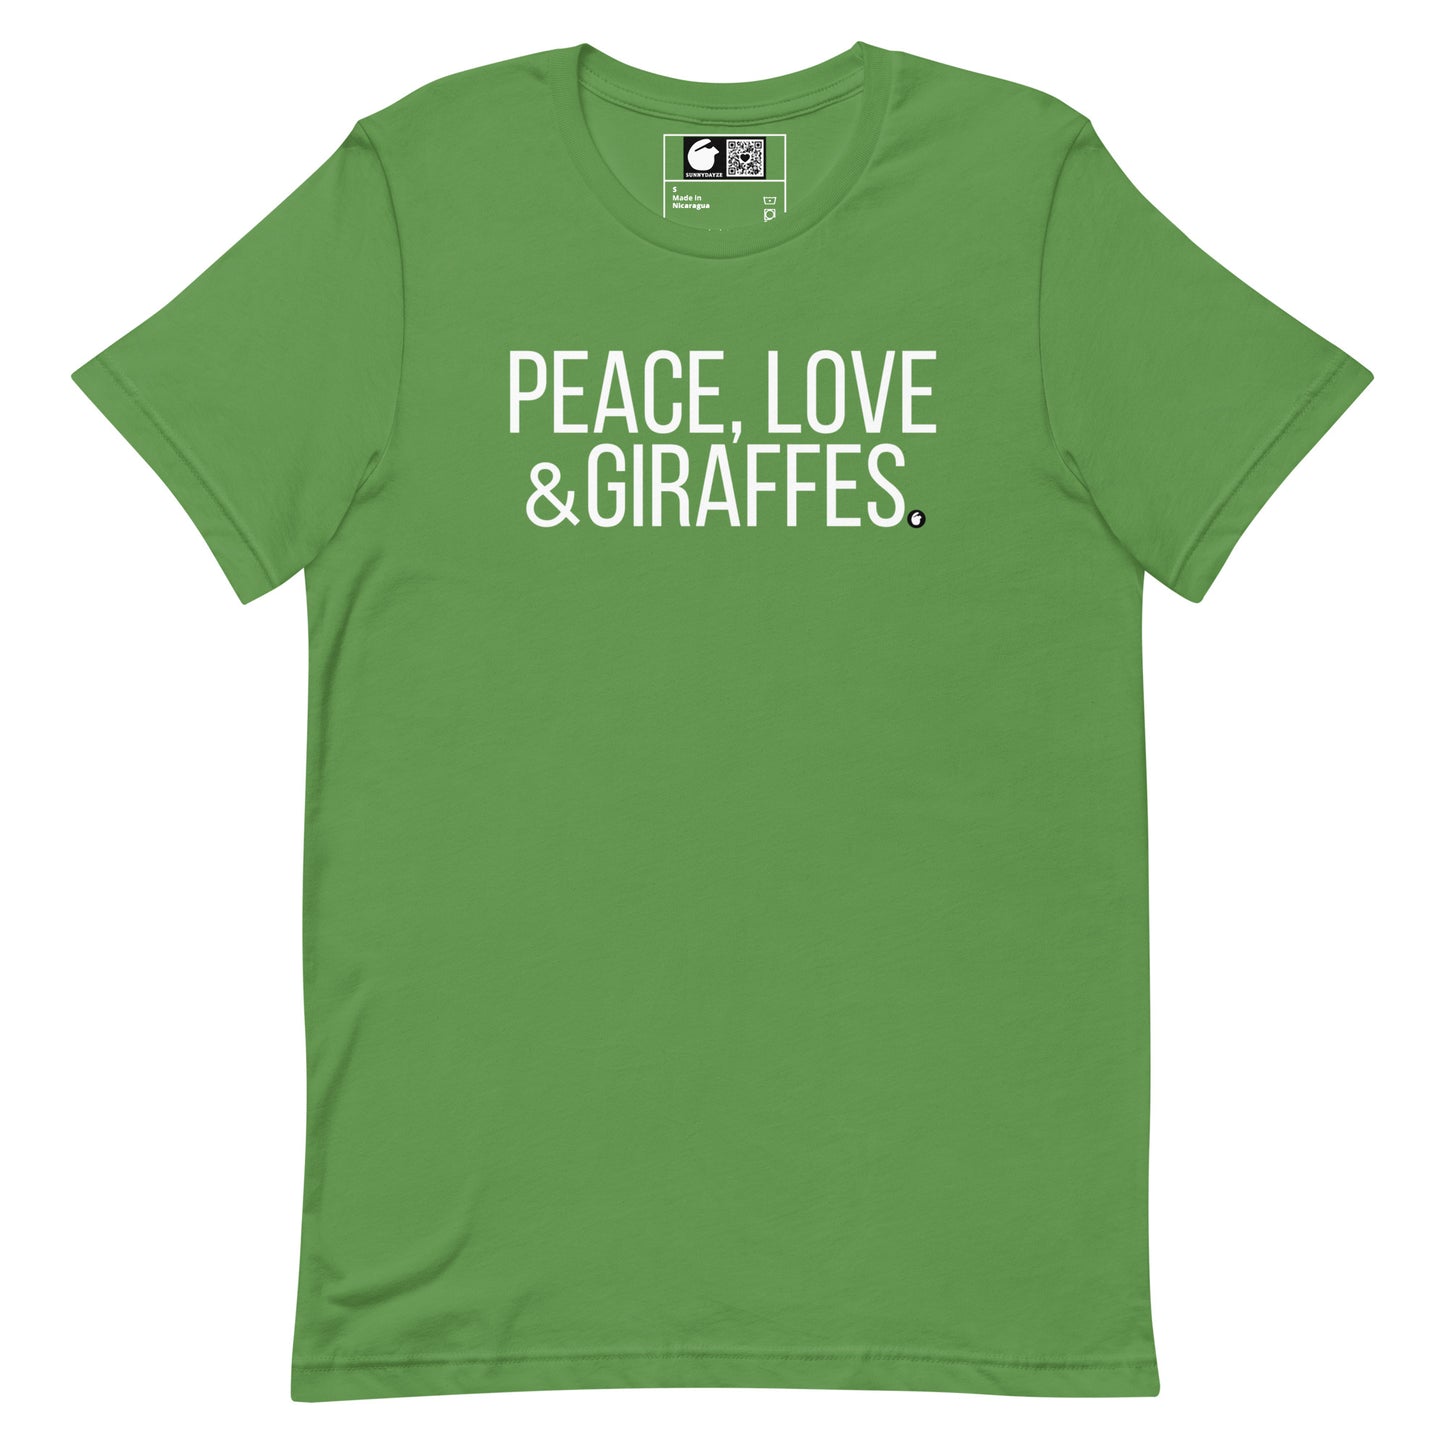 GIRAFFES Short-Sleeve Unisex t-shirt